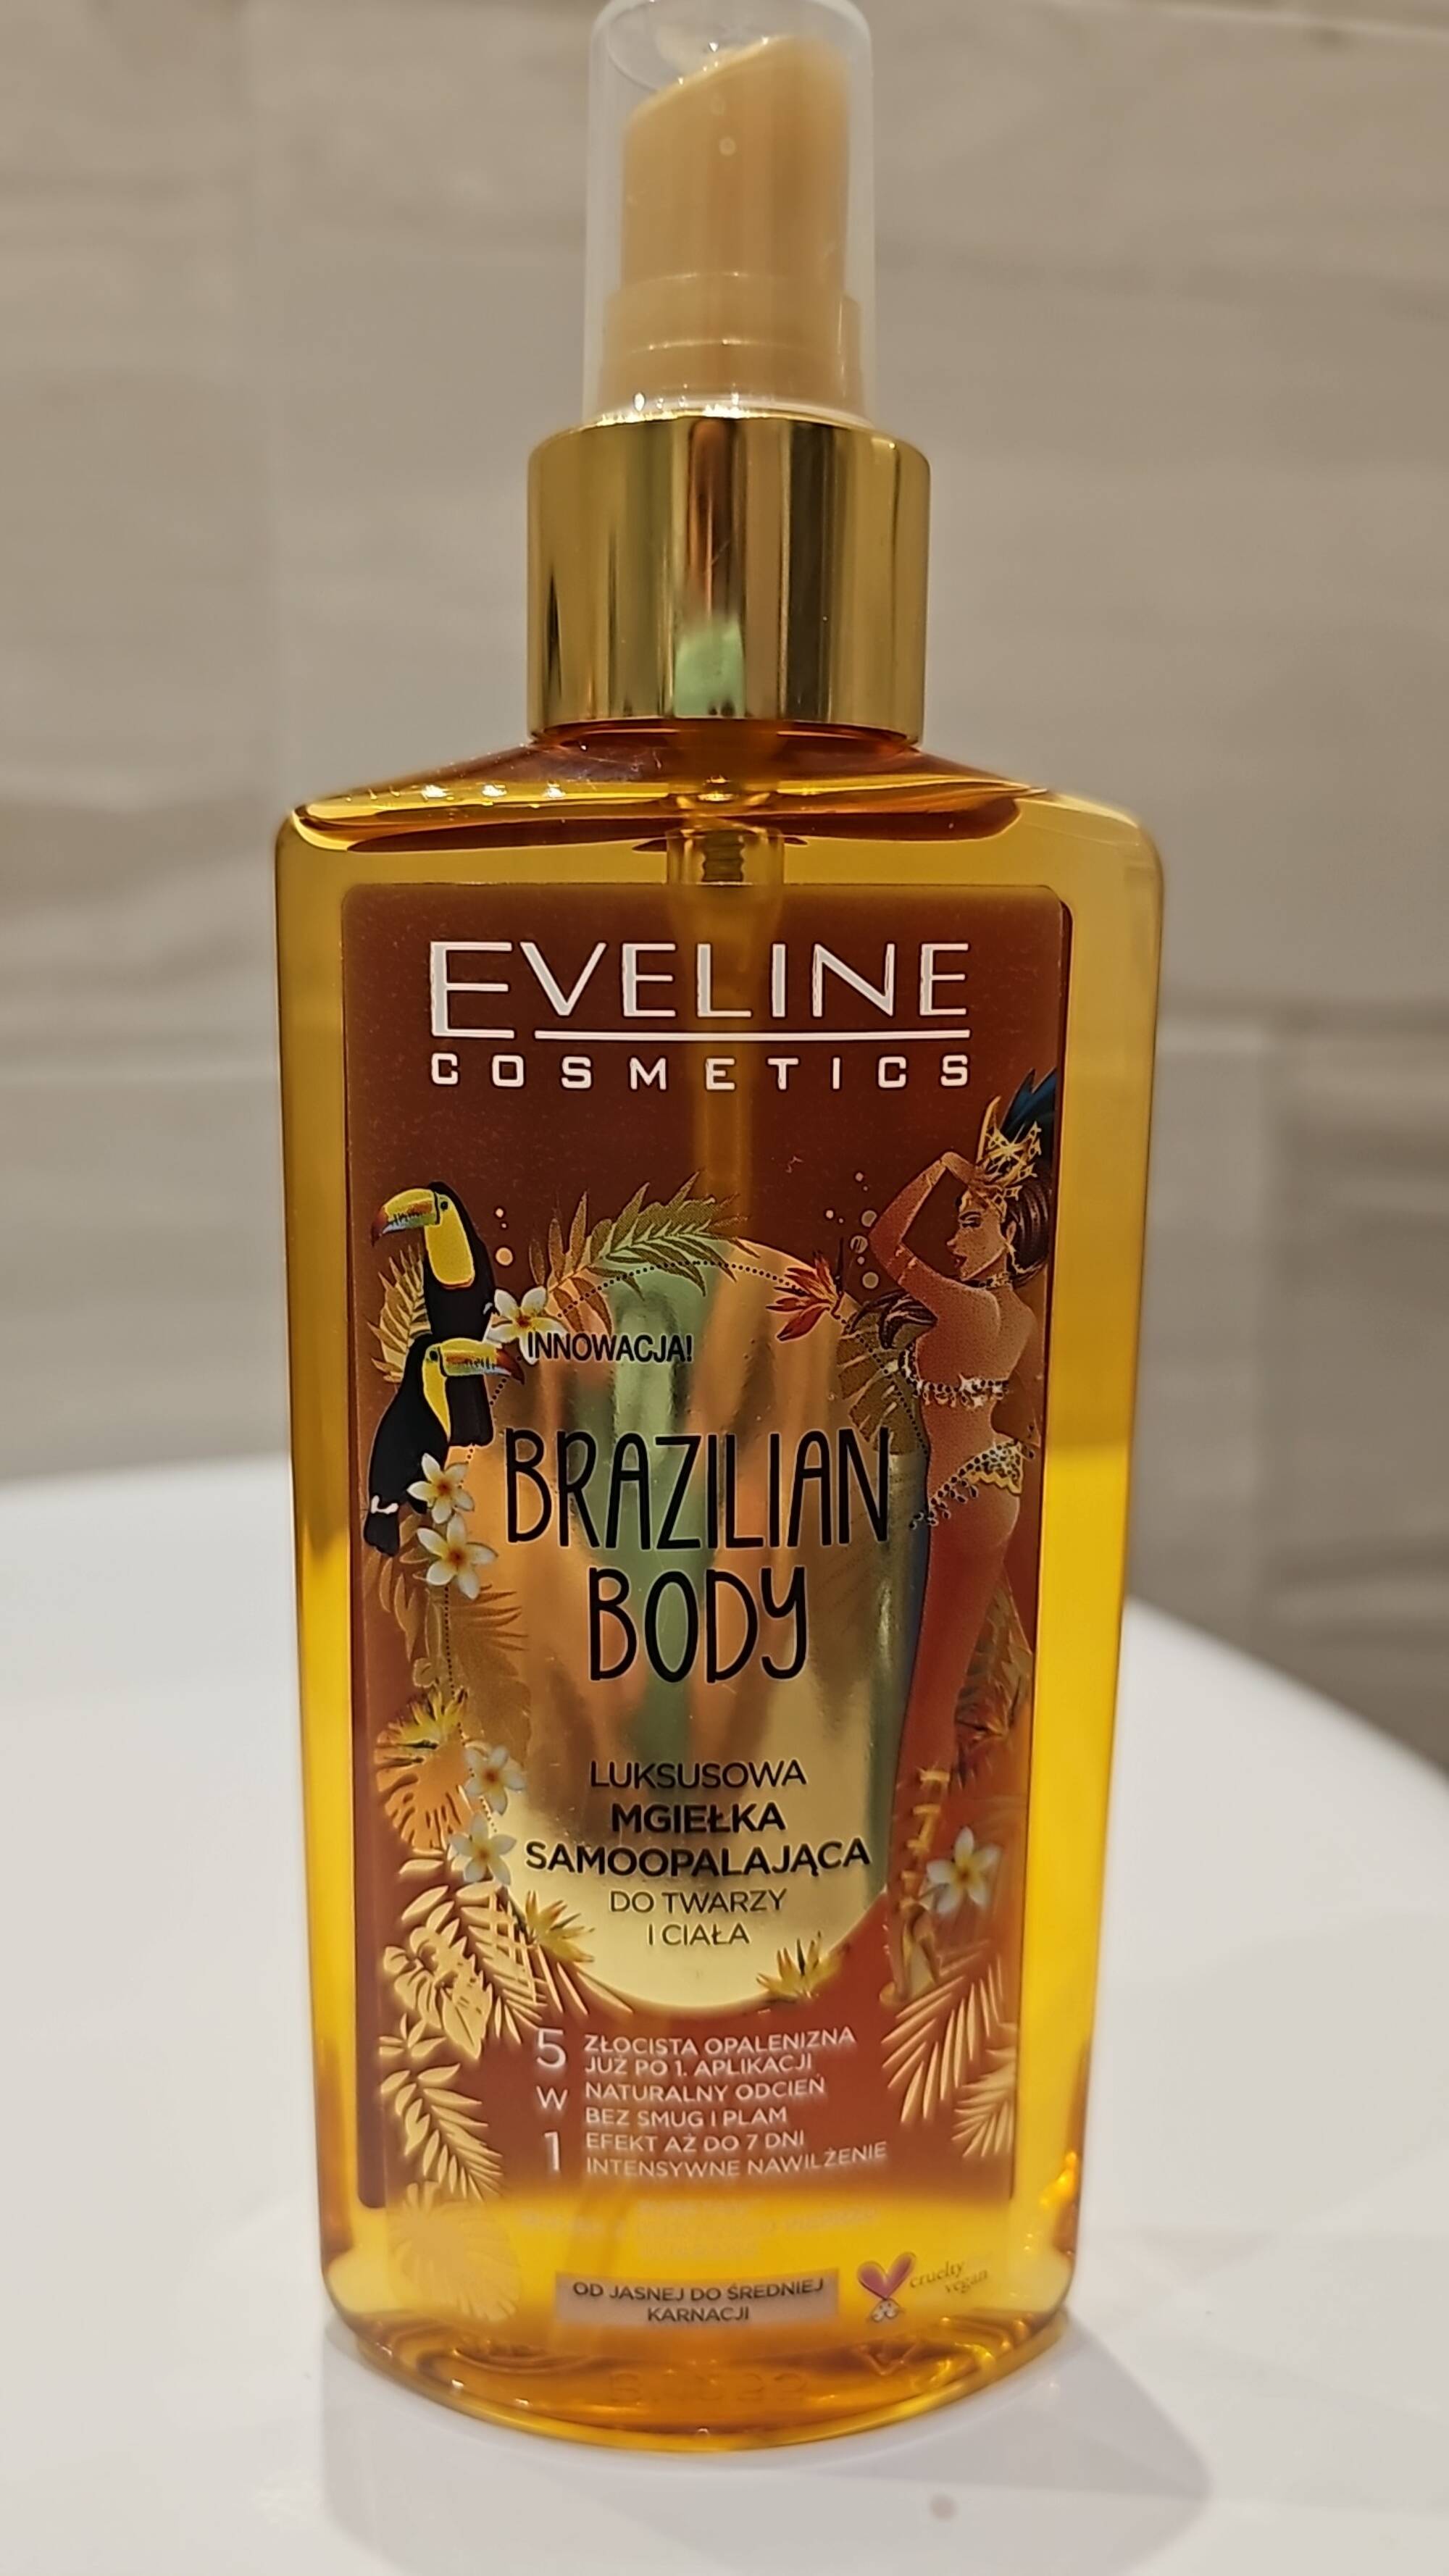 EVELINE COSMETICS - Brazilian body - Mgiełka samoopalająca